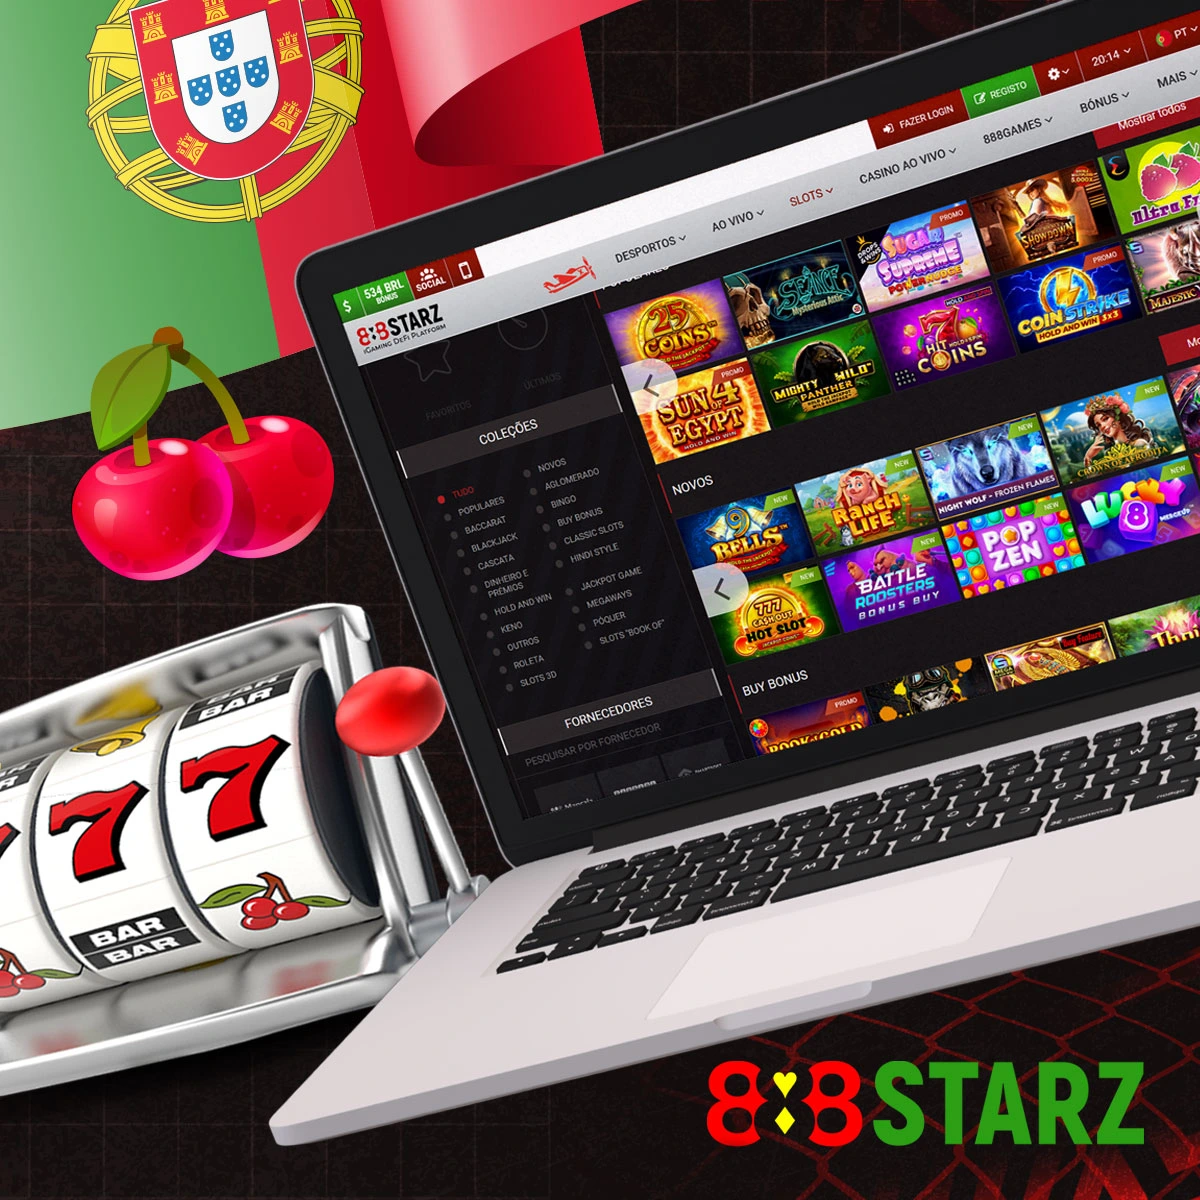 Os jogos de slots estão disponíveis no 888starz casino